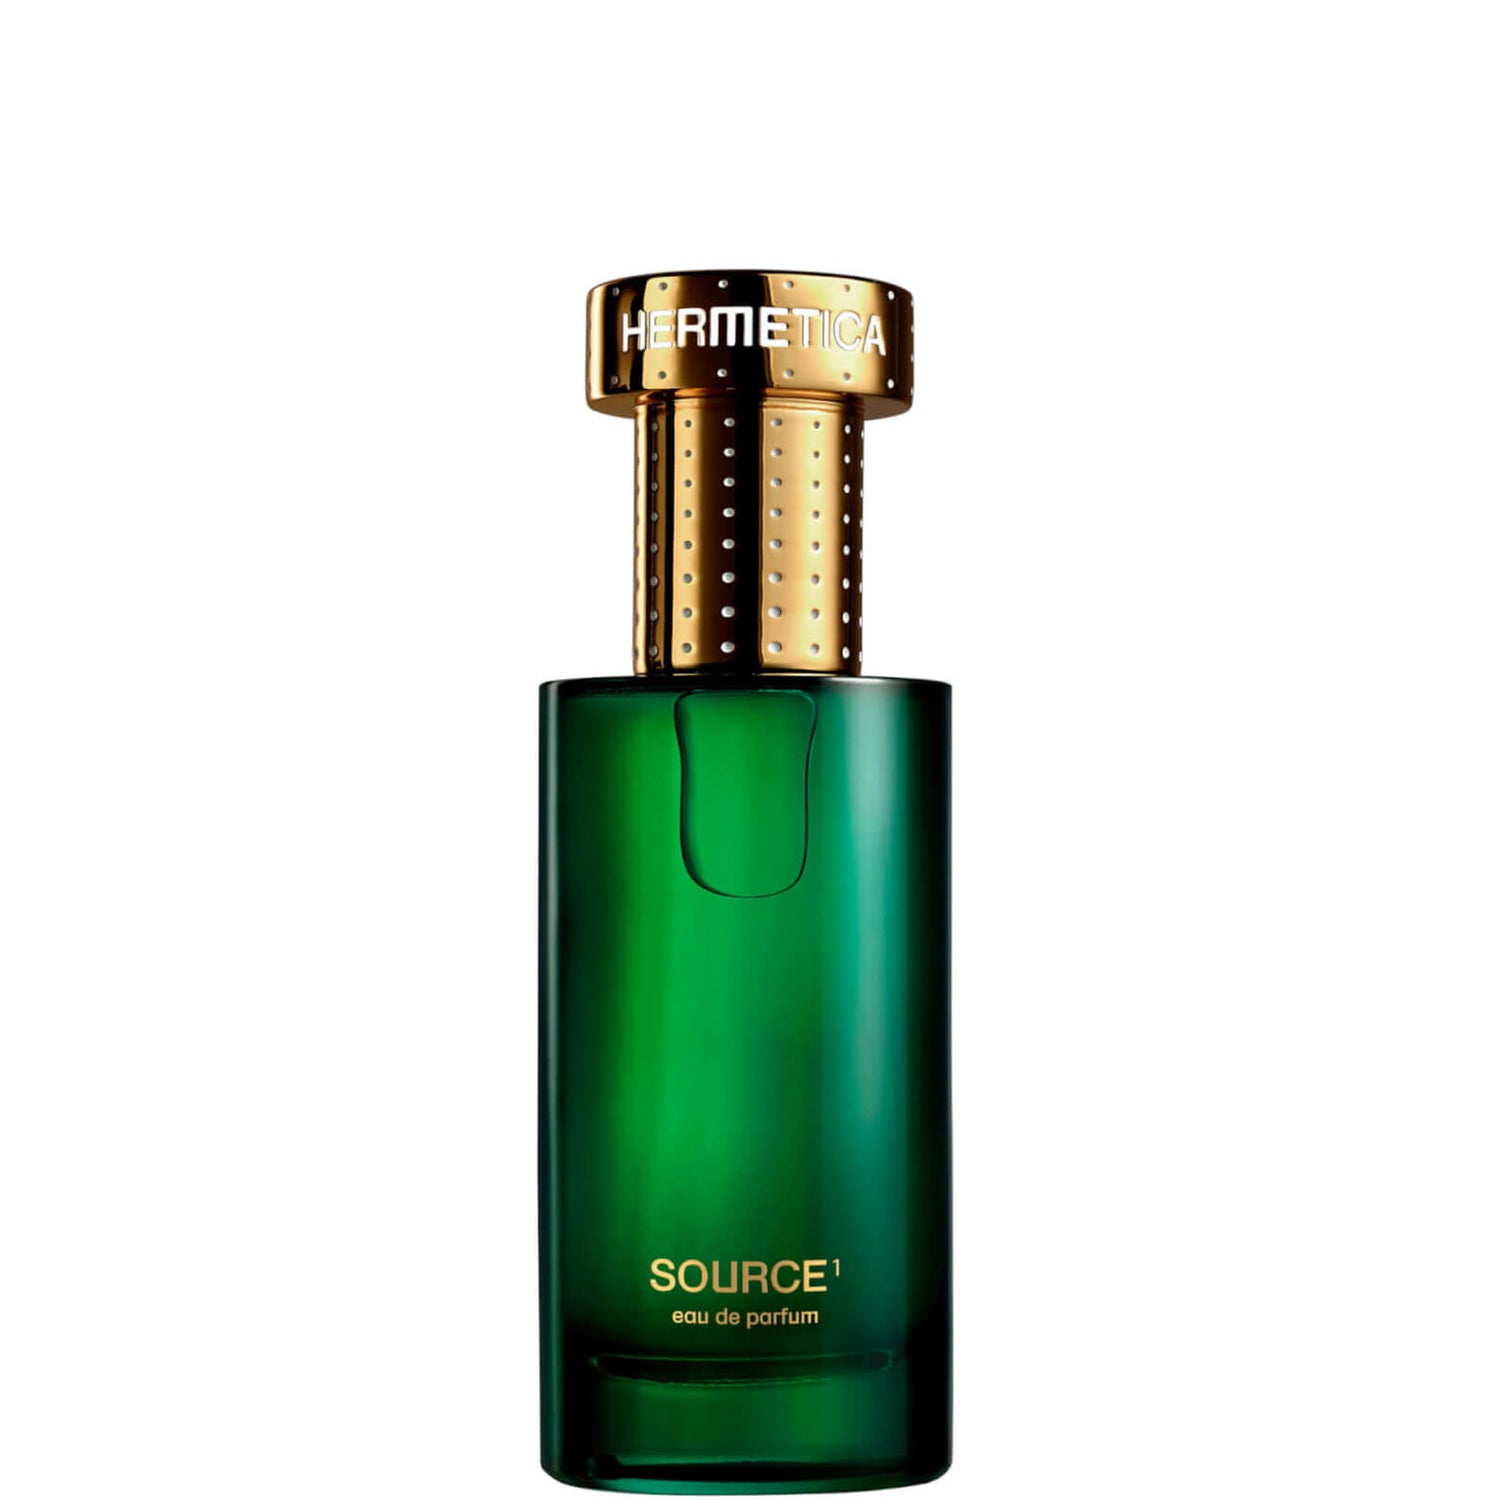 Hermetica Source1 Eau de Parfum 50ml